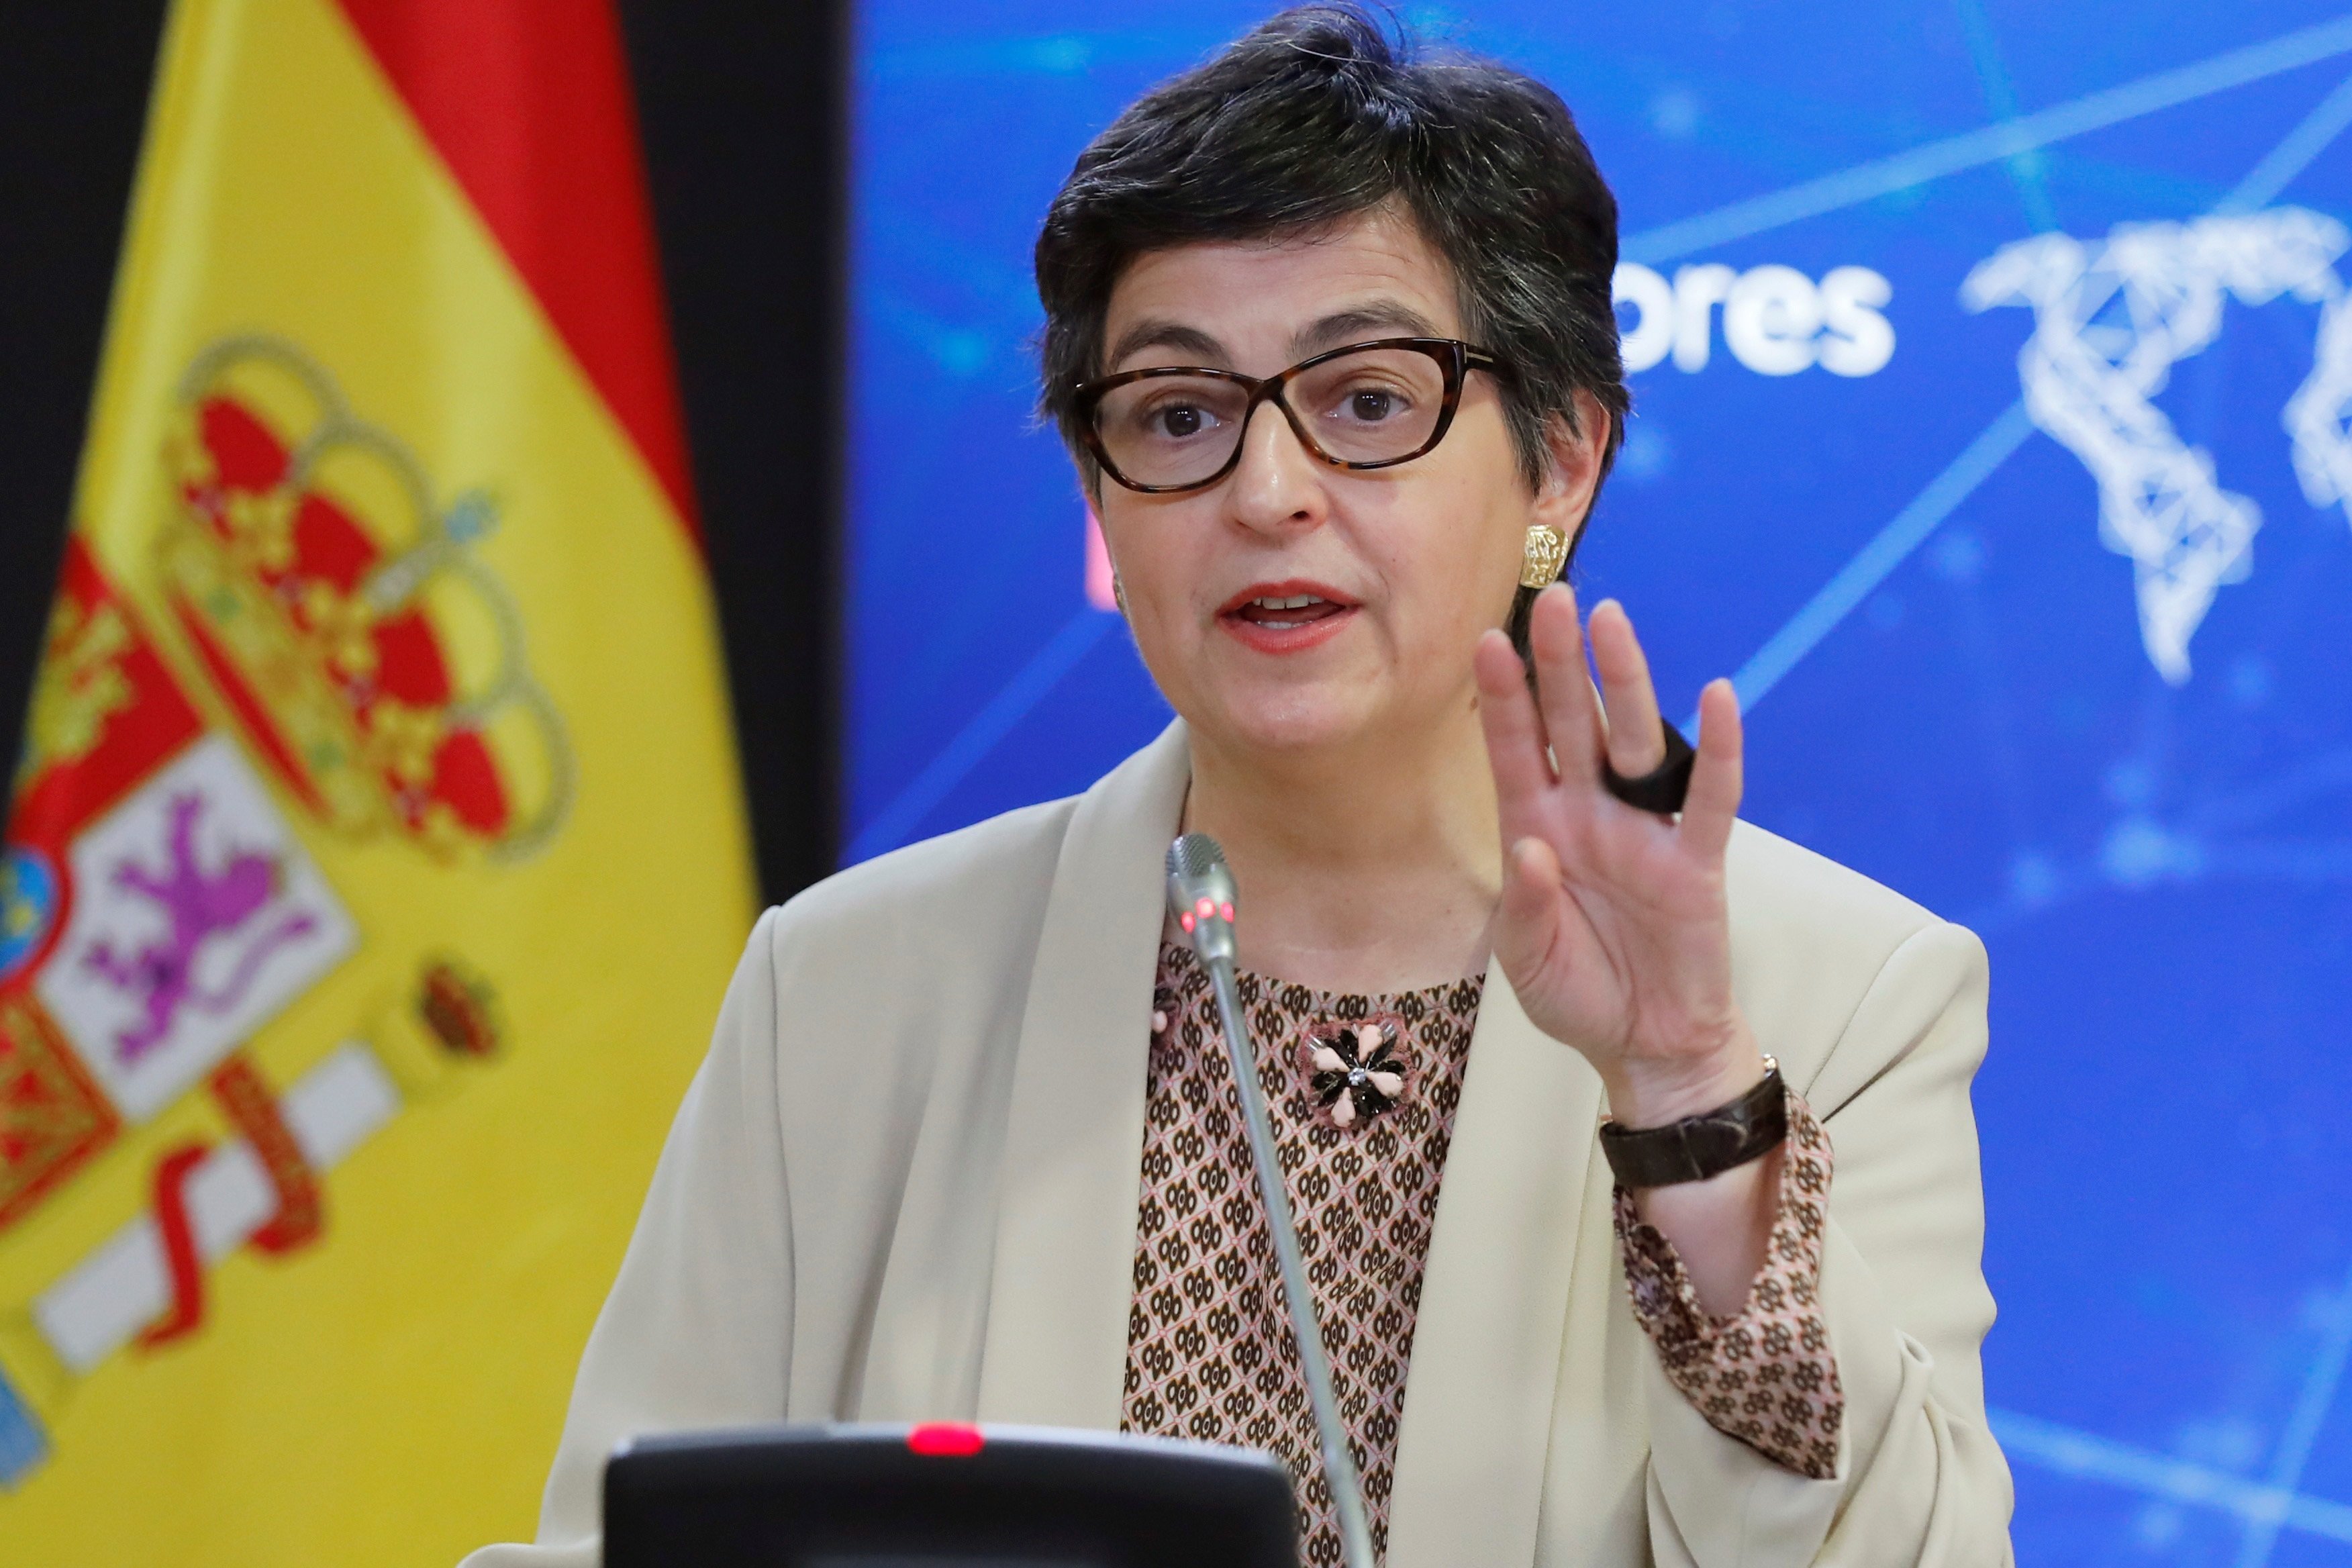 Espanya es regira i titlla d’incoherent l’informe del Consell d’Europa